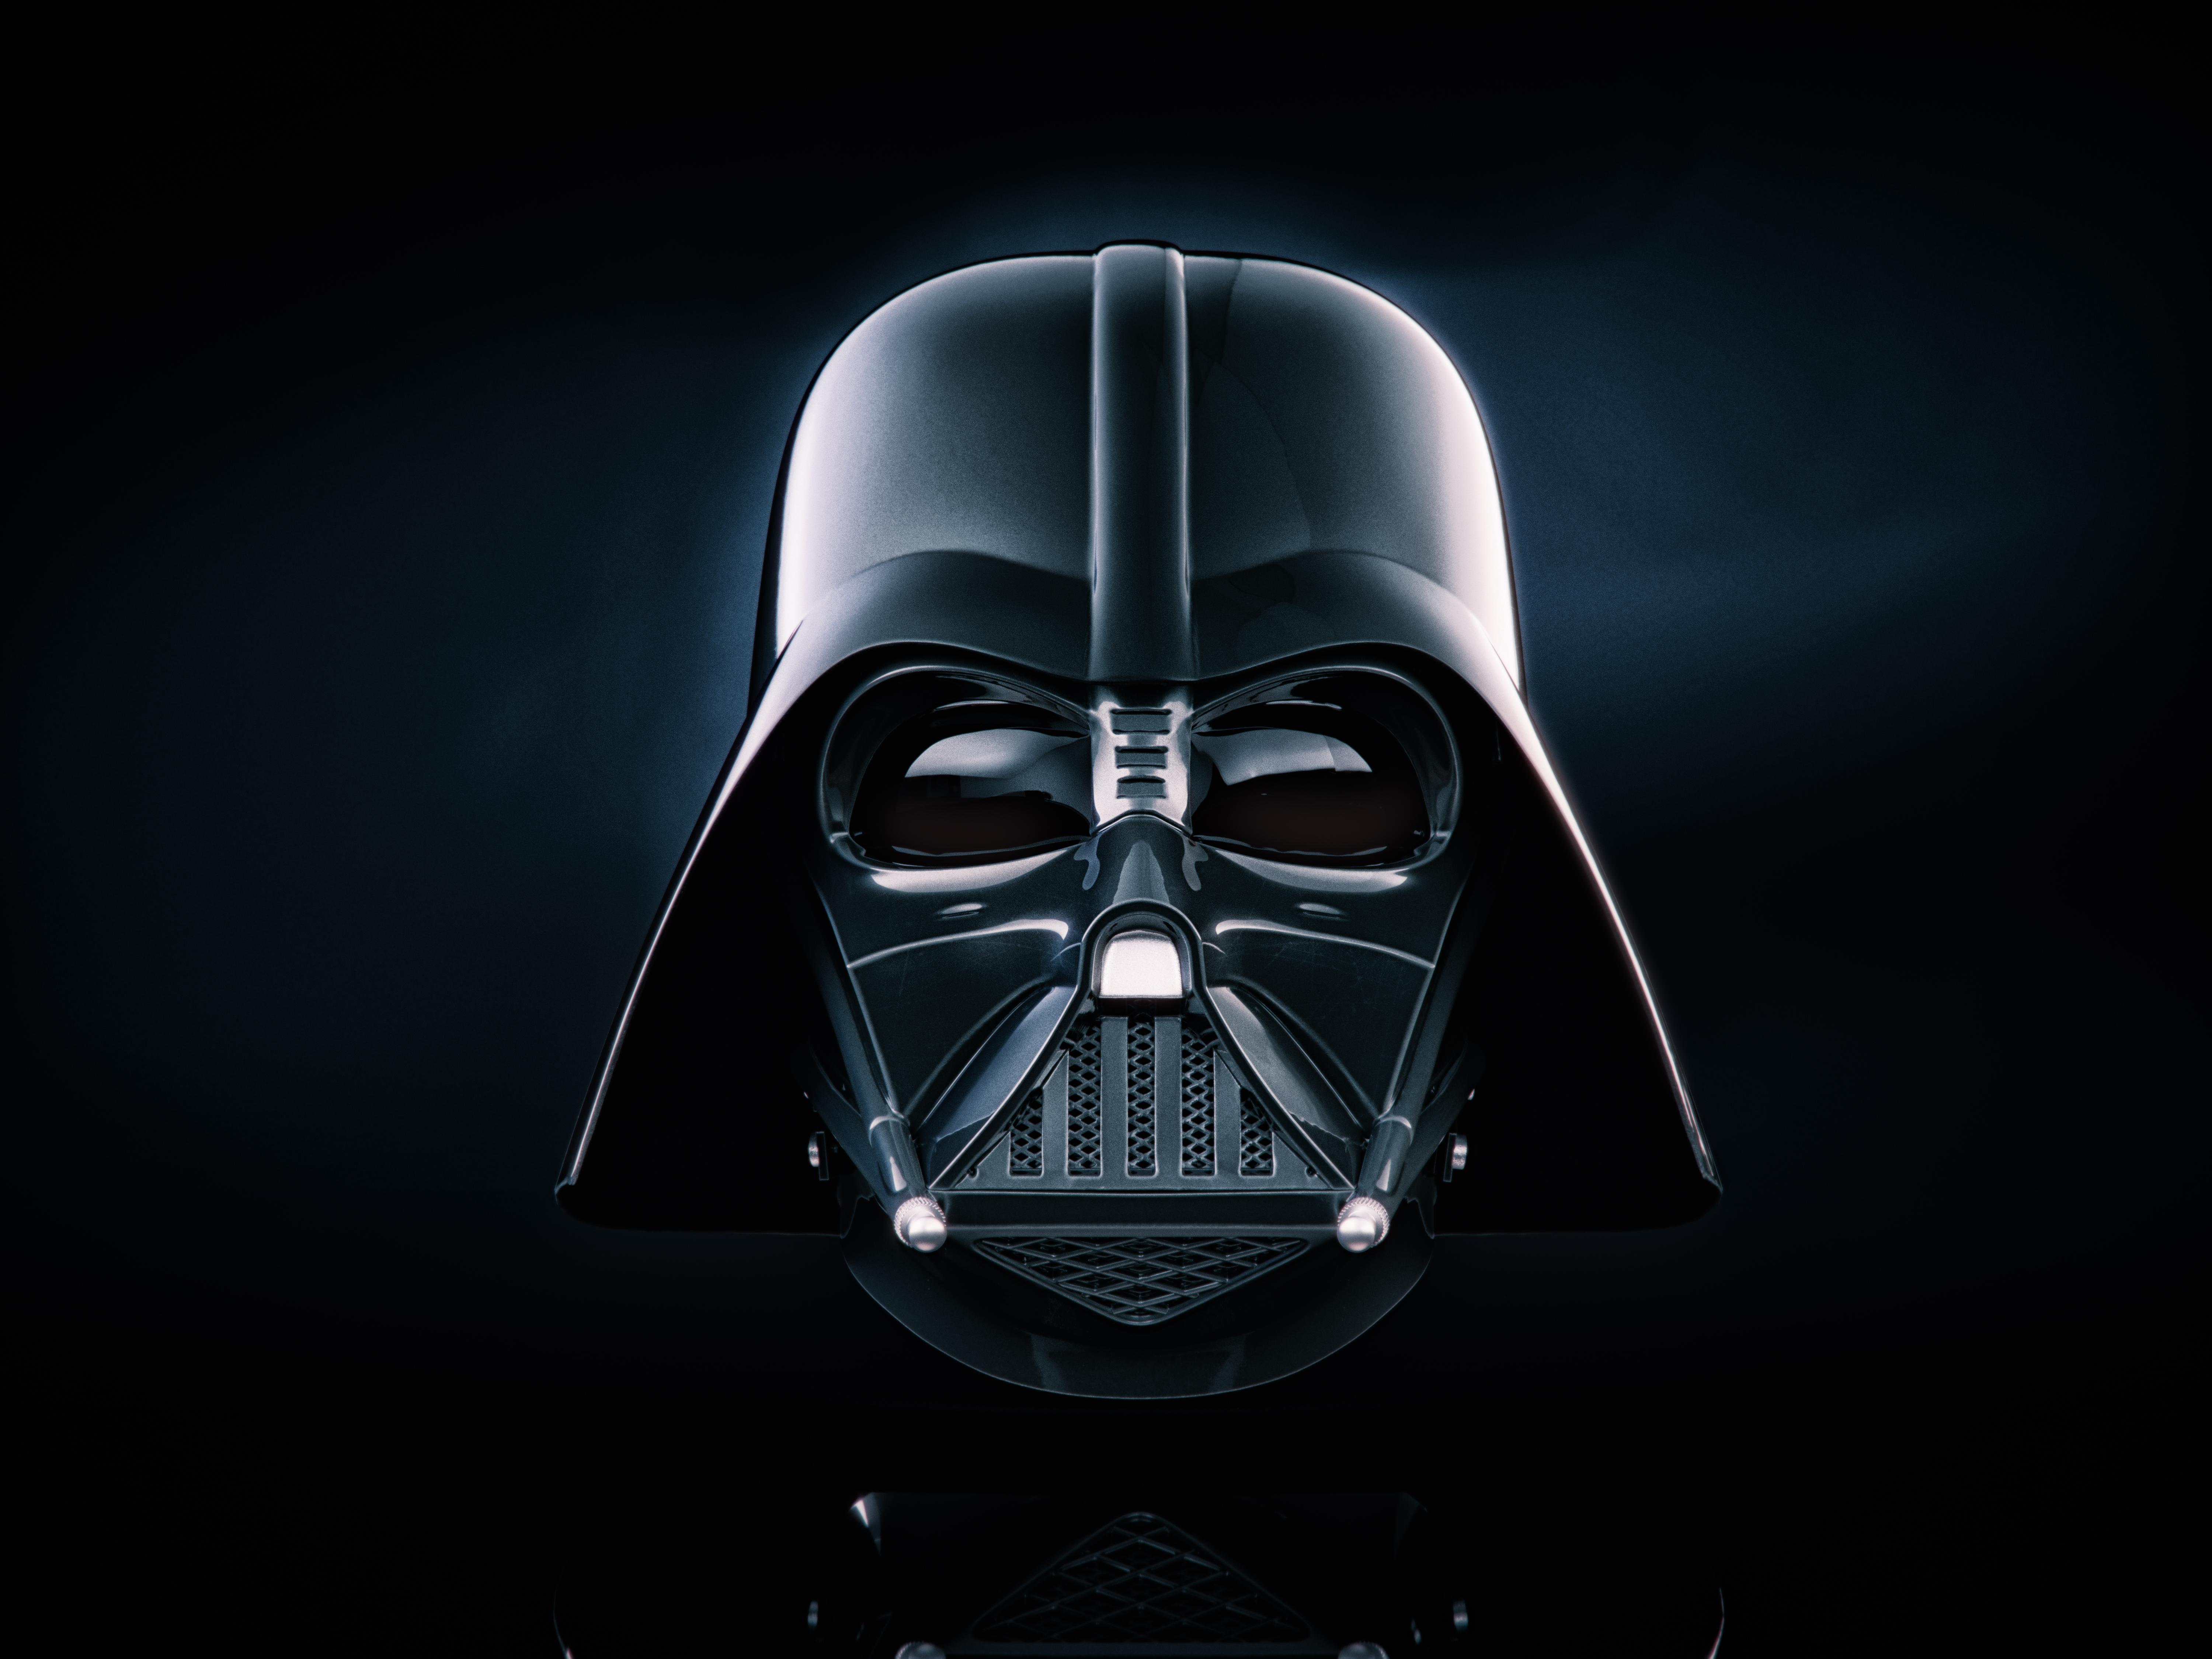 Darth Vader 5k, HD Movies, 4k Wallpaper, Image